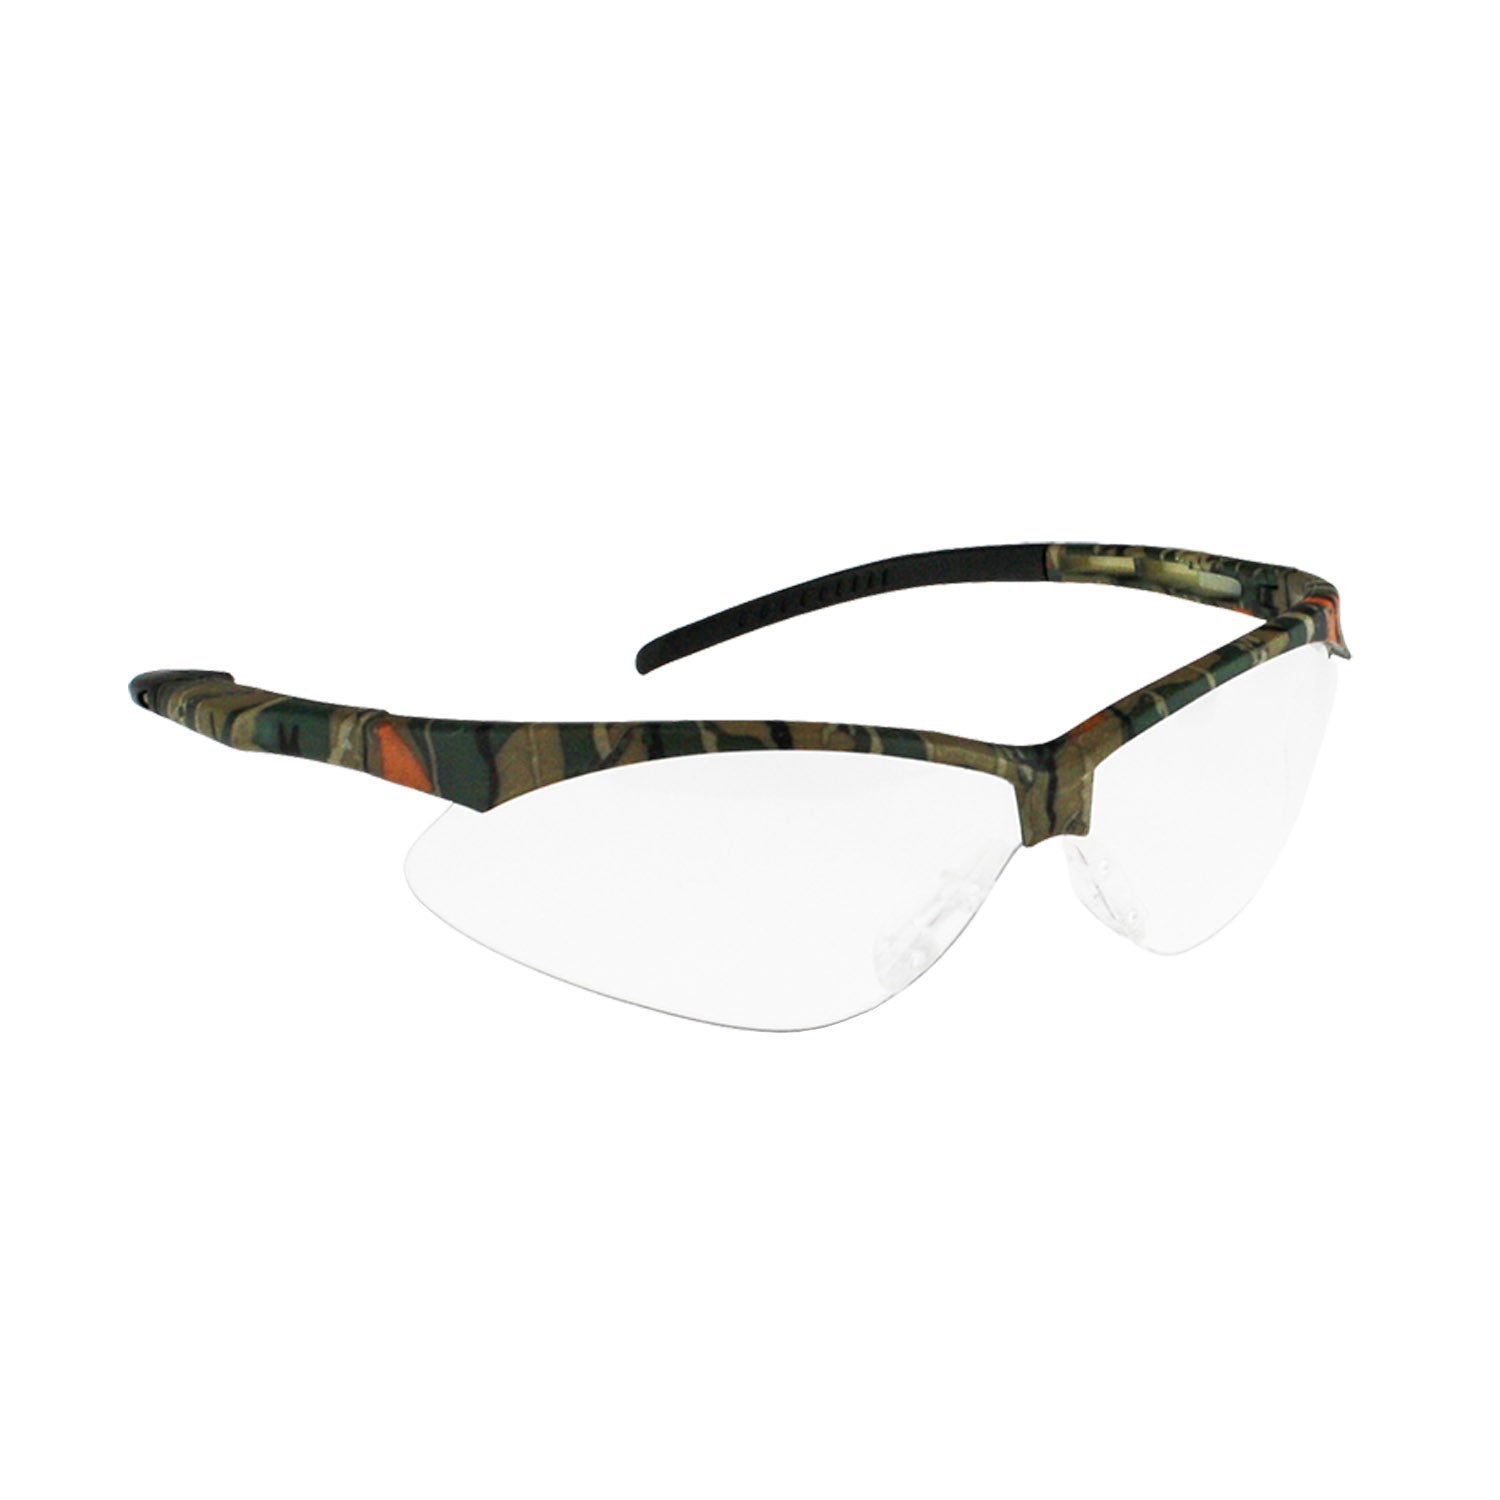 Radians Rad-Apocalypse™ Camo Safety Eyewear